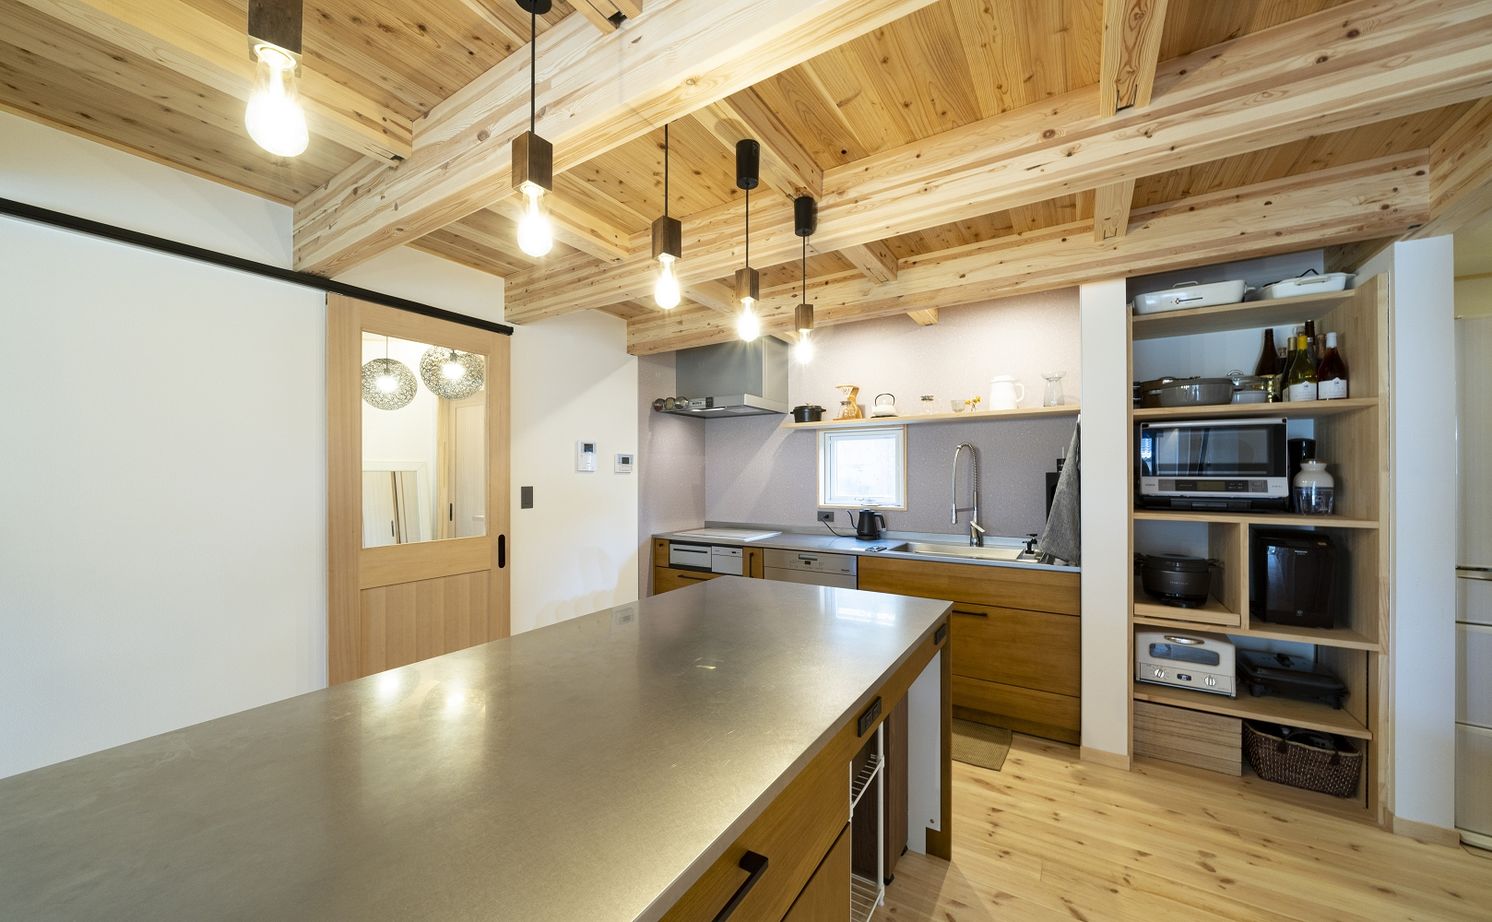 Suumo 自宅で料理教室 キッチンスタジオのある家 ネクストハウスデザイン の建築実例詳細 注文住宅